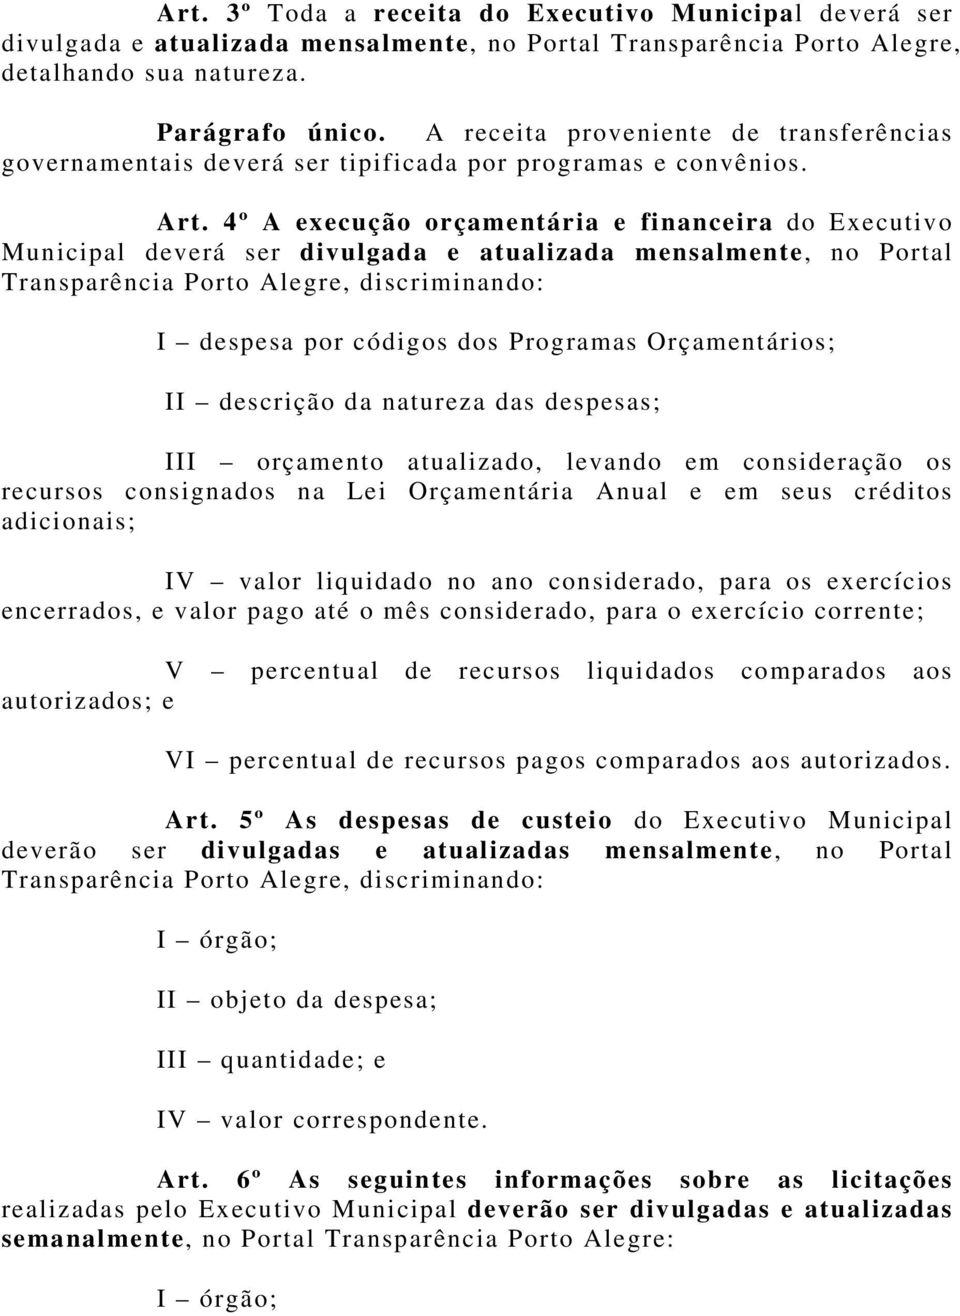 4º A execução orçamentária e financeira do Executivo Municipal deverá ser divulgada e atualizada mensalmente, no Portal Transparência Porto Alegre, discriminando: I despesa por códigos dos Programas